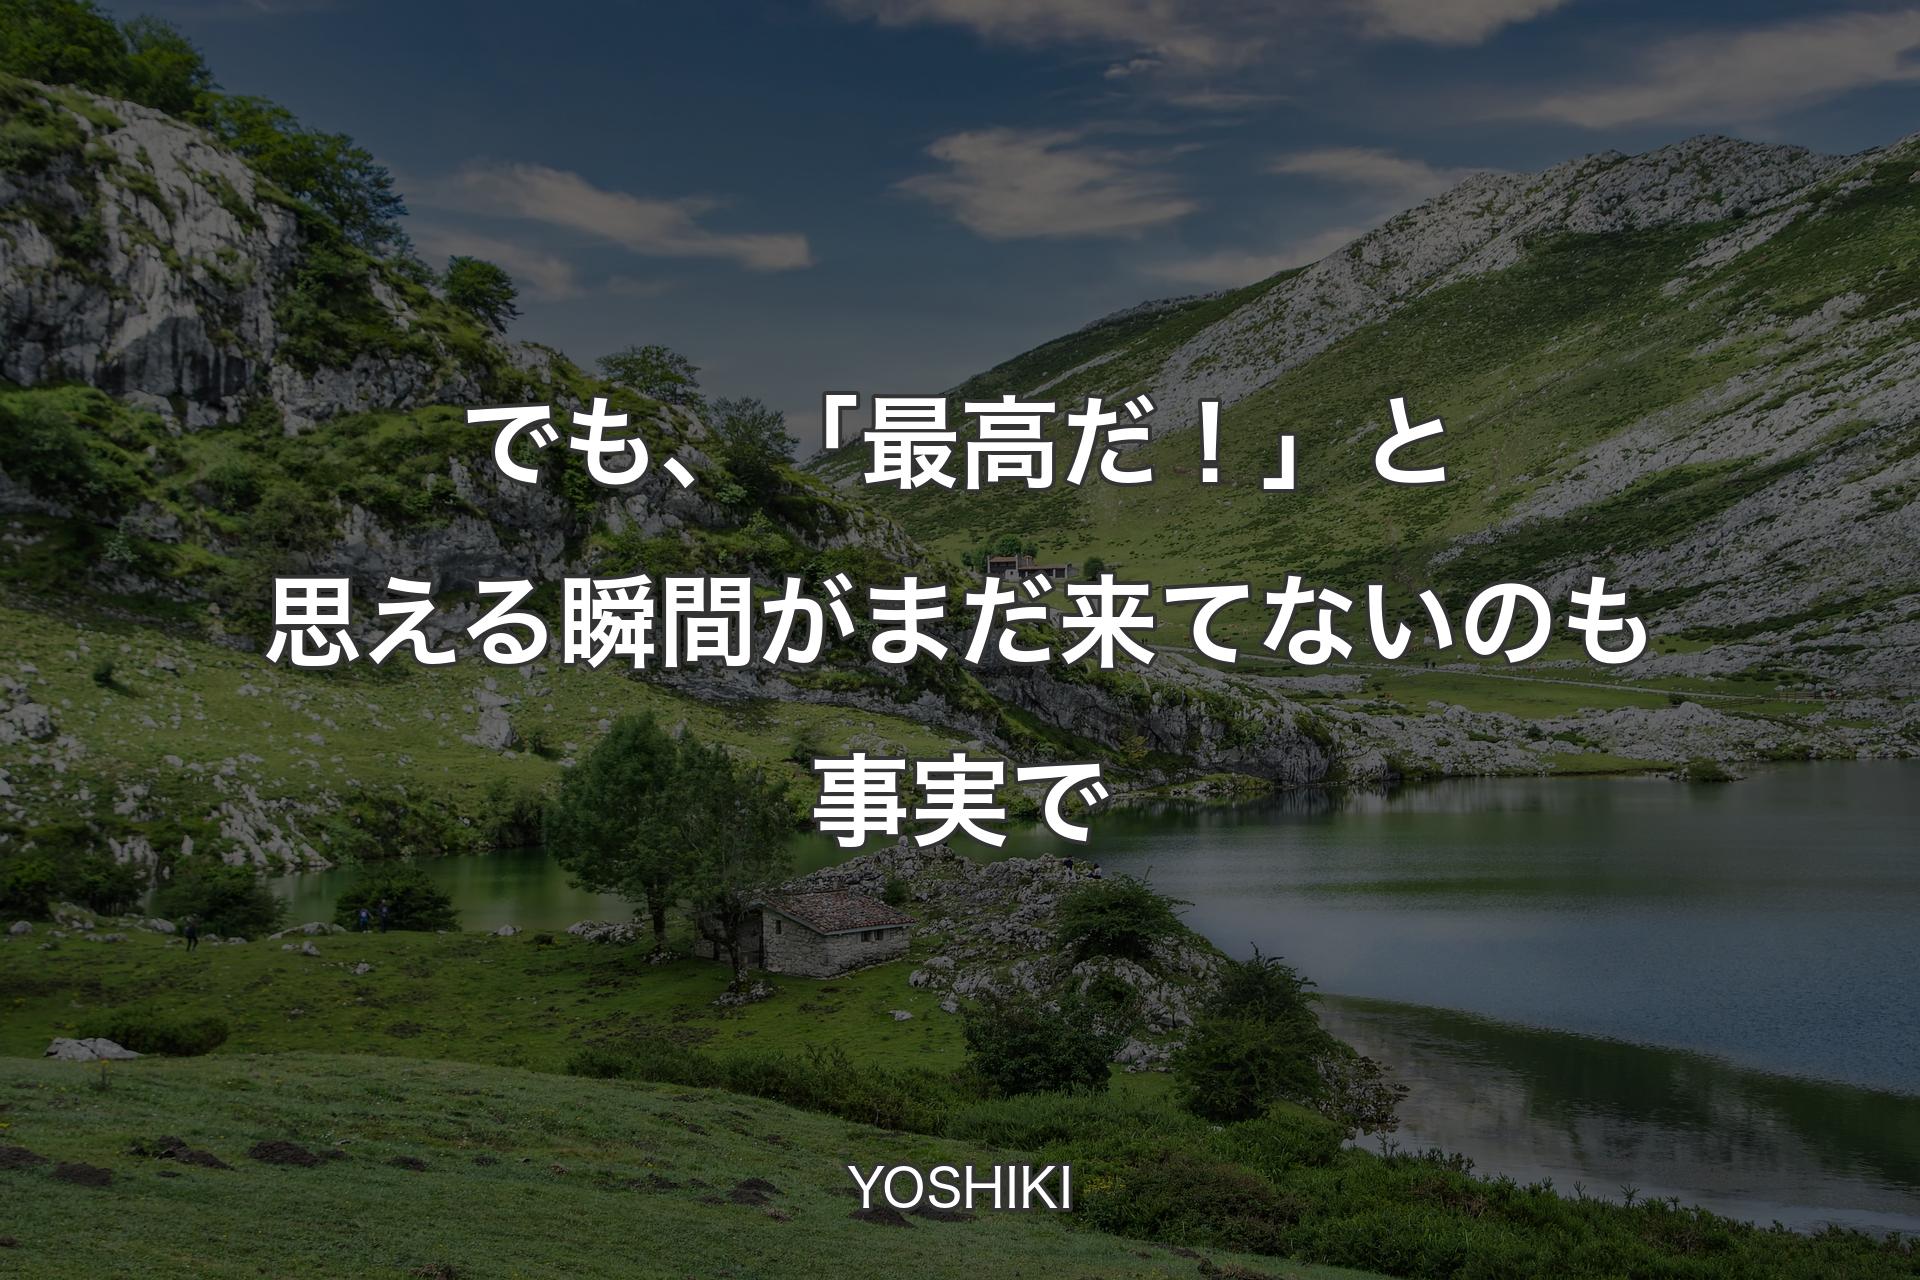 【背景1】でも、「最高だ！」と思える瞬間がまだ来てないのも事実で - YOSHIKI